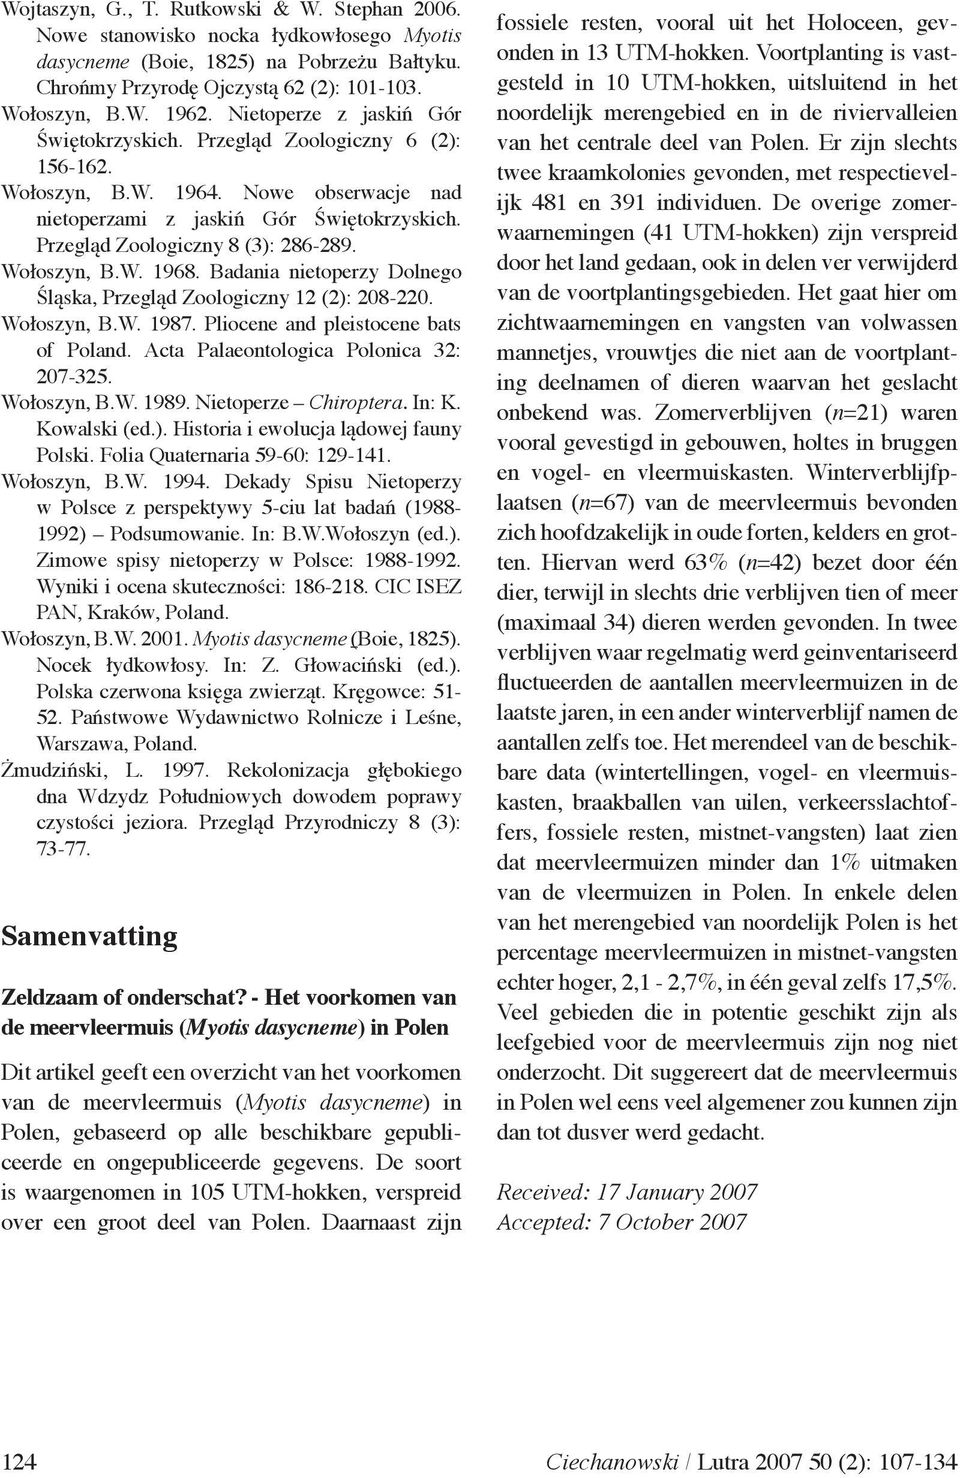 Wołoszyn, B.W. 1968. Badania nietoperzy Dolnego Śląska, Przegląd Zoologiczny 12 (2): 208-220. Wołoszyn, B.W. 1987. Pliocene and pleistocene bats of Poland. Acta Palaeontologica Polonica 32: 207 325.